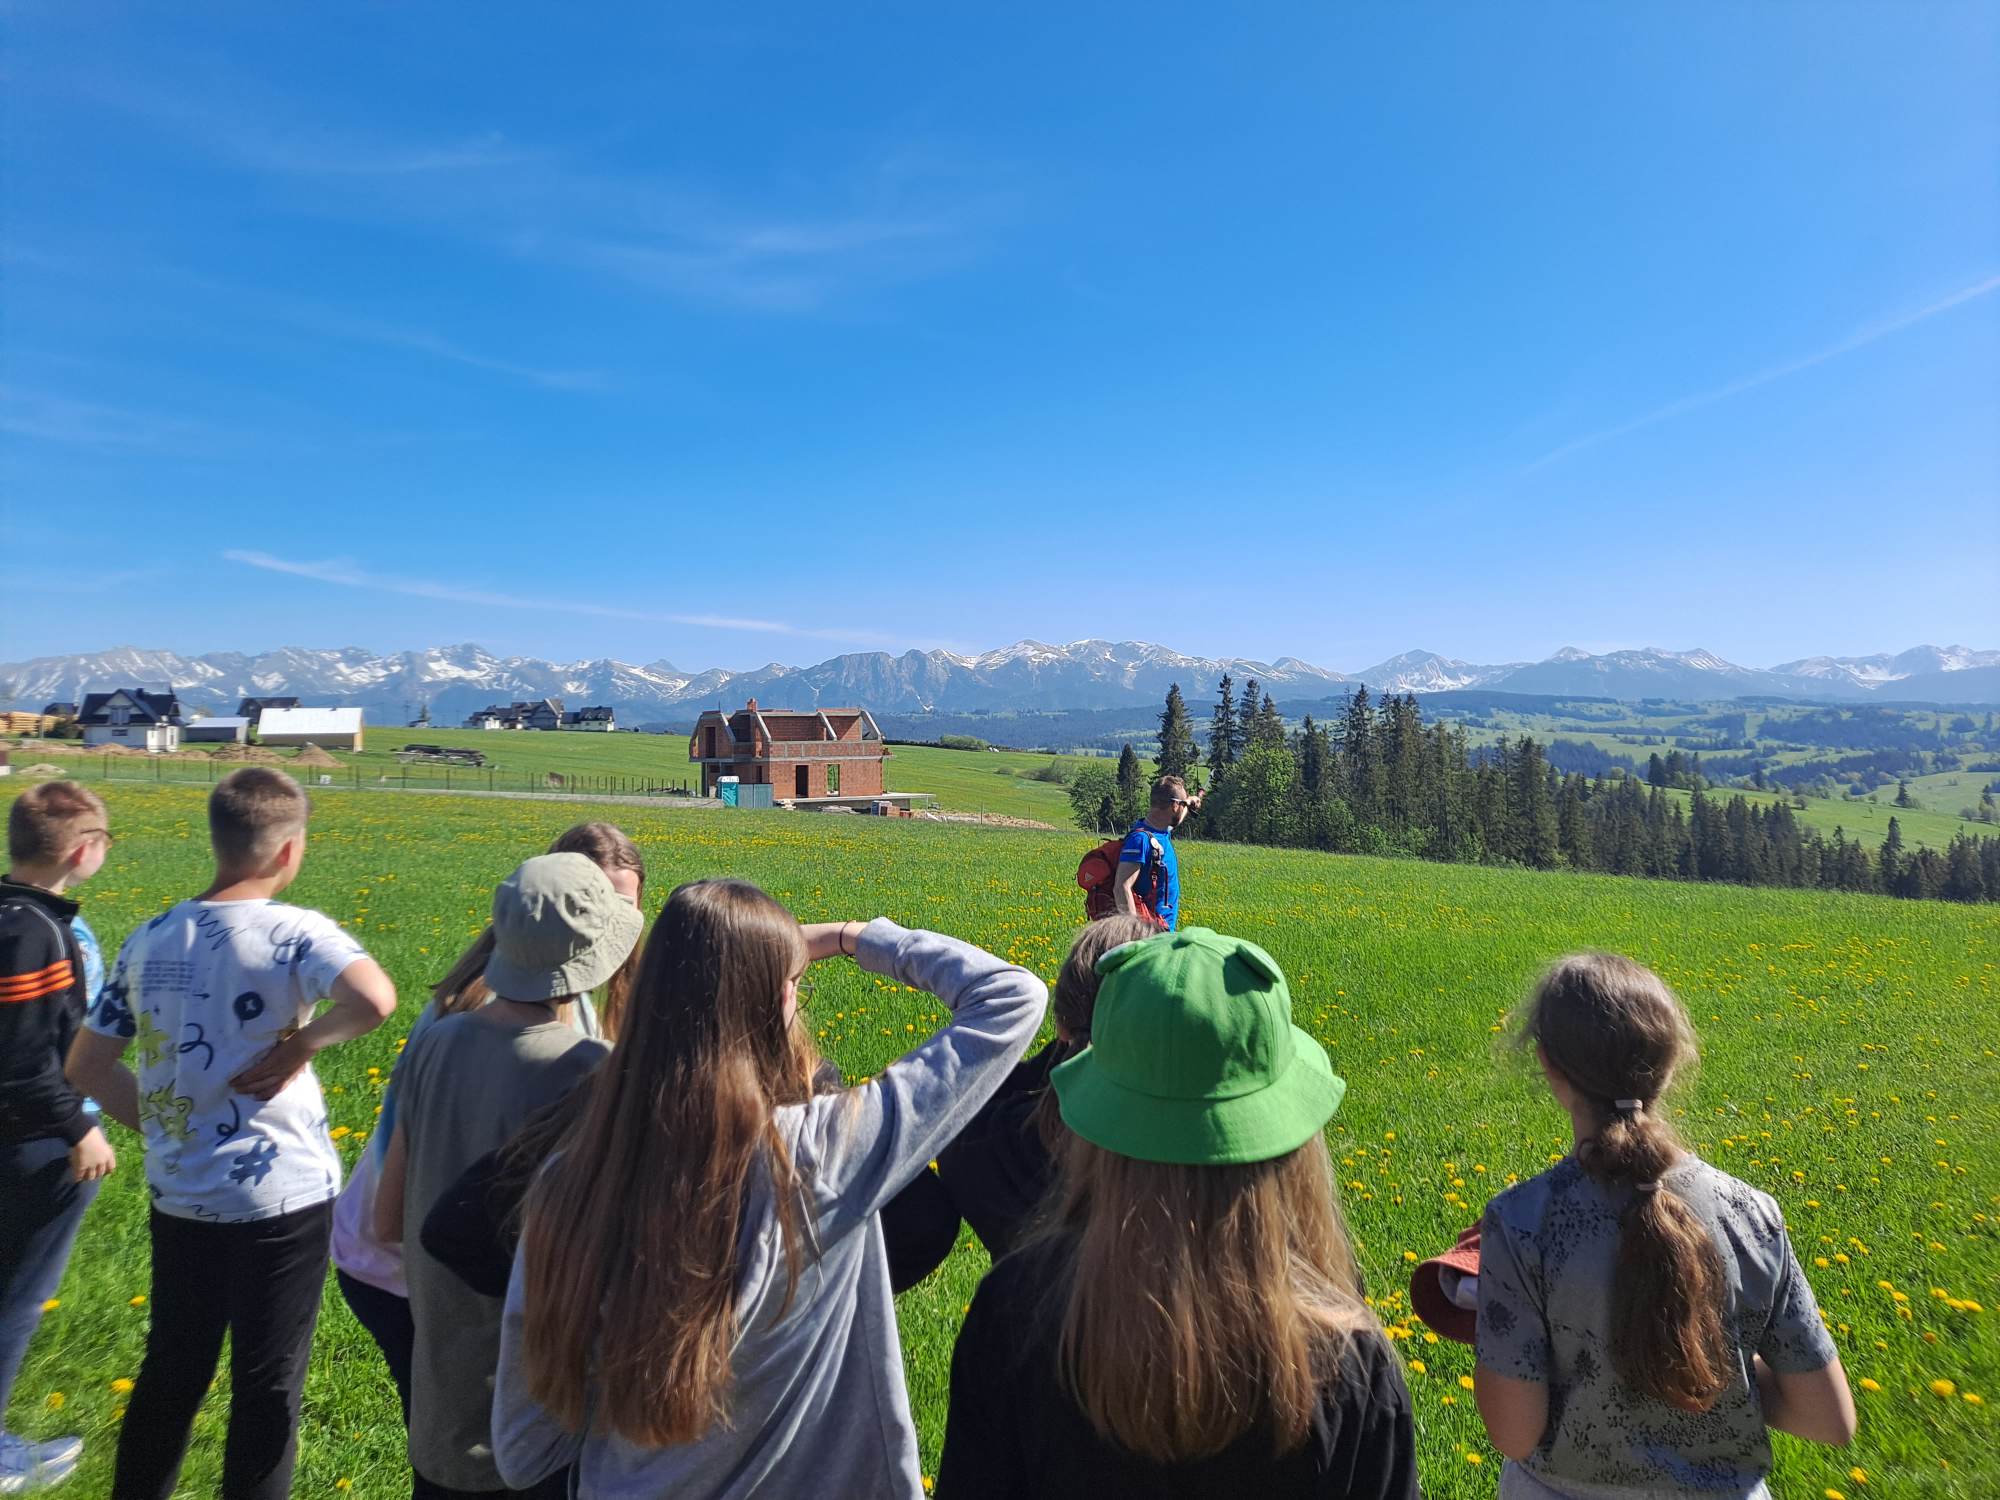 Uczniowie obserwują panoramę Tatr i Beskidu Żywieckiego z Bachledówki  - wzniesienia na Pogórzu Spisko - Gubałowskim koło Zakopanego.